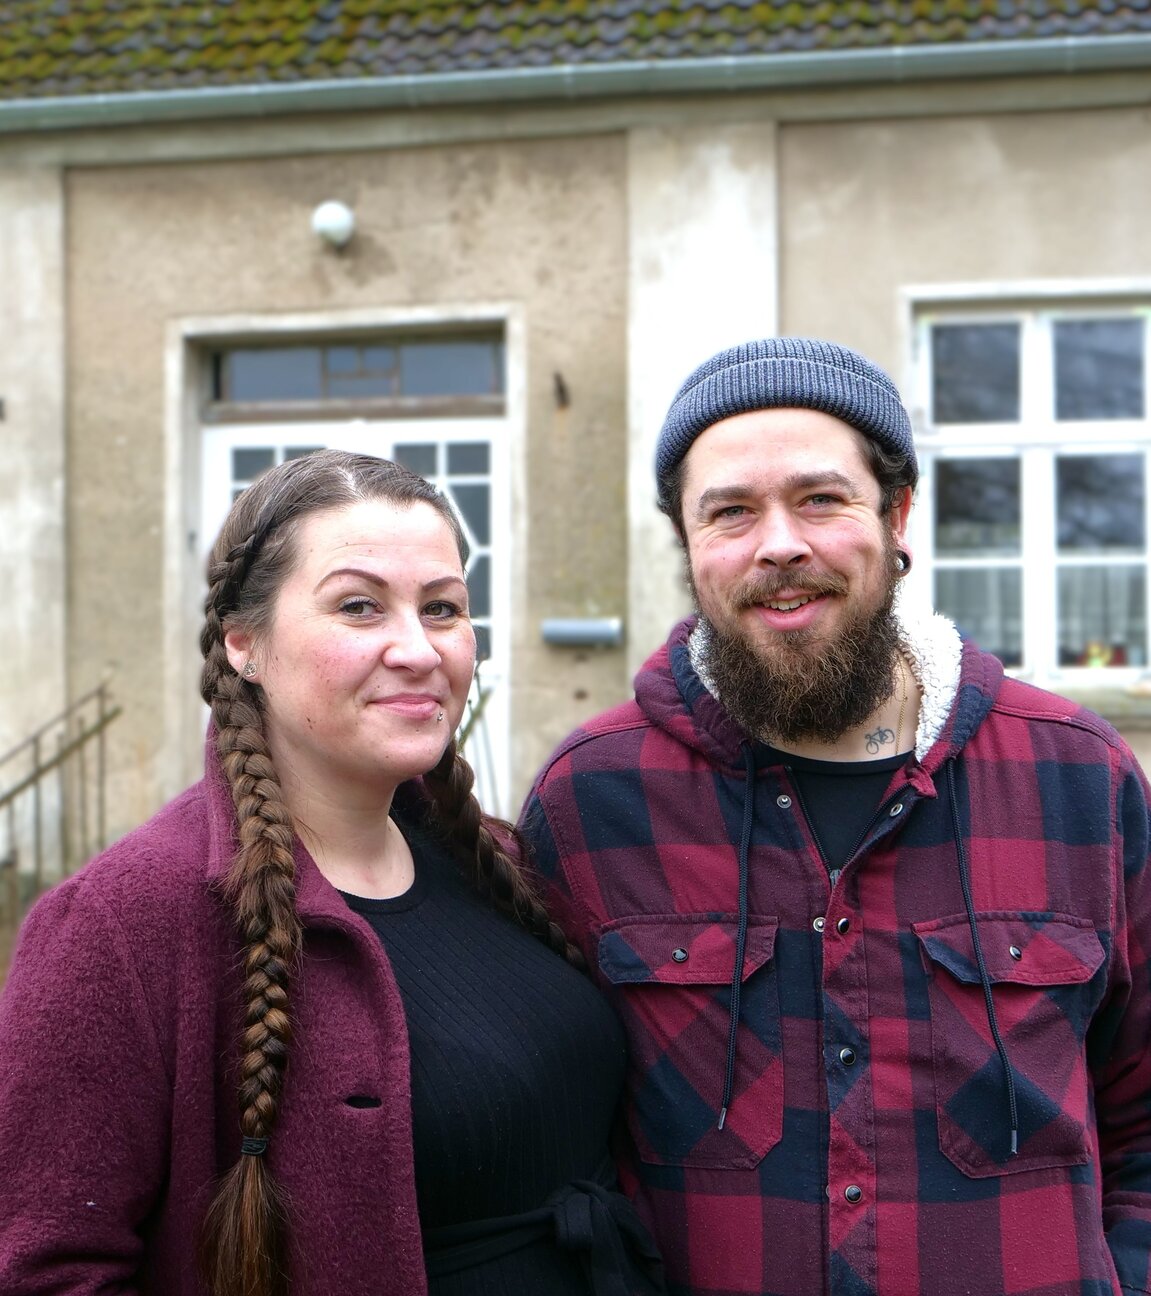 "ZDF.reportage: Großprojekt Hausbau": Sara und Max stehen nebeneinander vor einem alten Haus und blicken lächelnd in die Kamera.